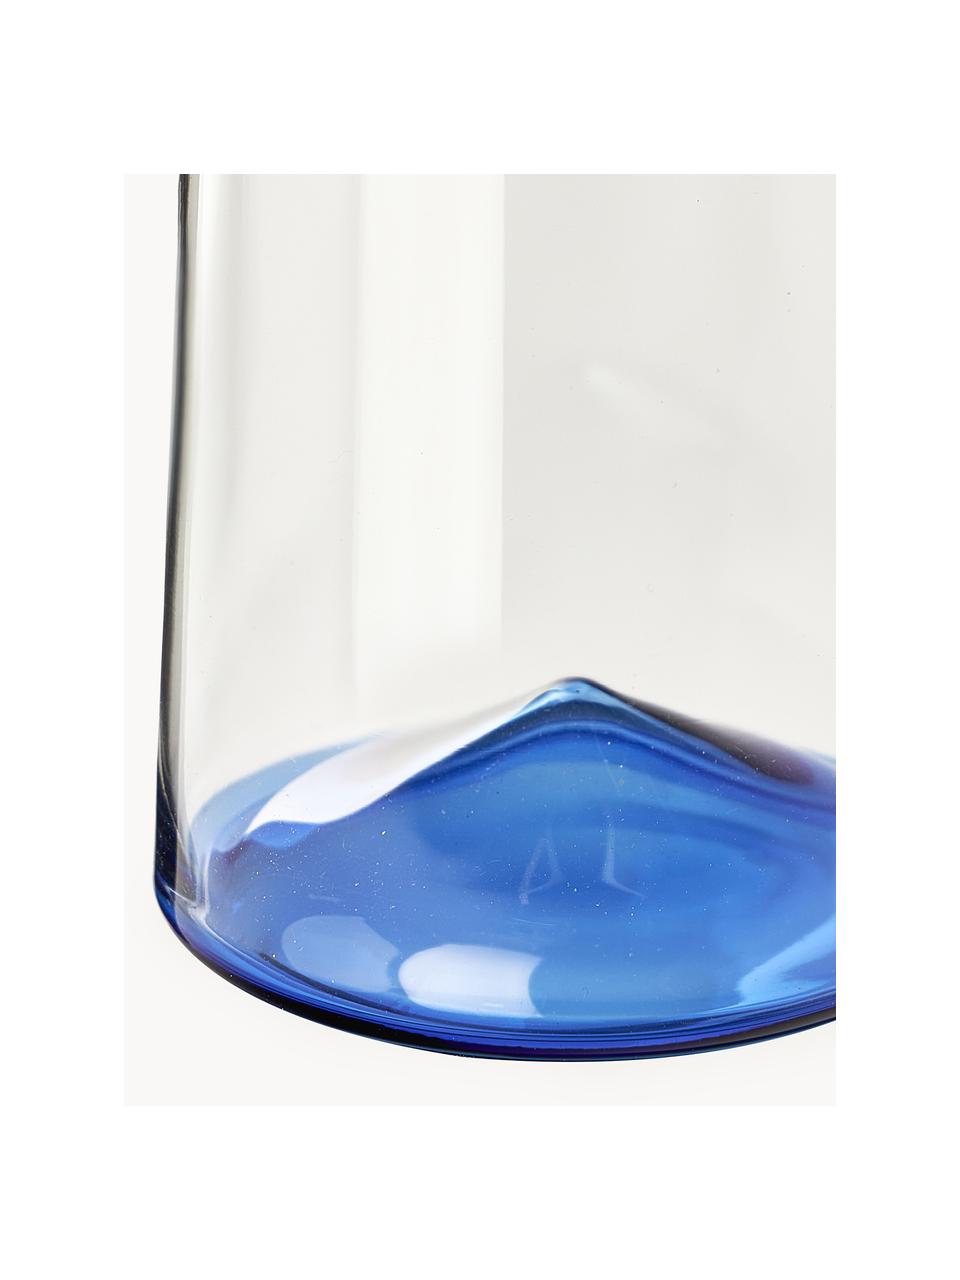 Bicchieri da long drink in vetro soffiato Hadley 4 pz, Vetro borosilicato soffiato

Scopri la versatilità delle stoviglie in vetro borosilicato per la tua casa! 
Il vetro borosilicato è un materiale di alta qualità, affidabile e robusto. È caratterizzato da un'eccezionale resistenza al calore e può quindi sopportare temperature estreme. È quindi particolarmente adatto per le bevande calde. Rispetto al vetro tradizionale, il vetro borosilicato è più resistente alla rottura e alle incrinature grazie alla sua composizione e struttura., Trasparente, blu, Ø 8 x Alt. 12 cm, 360 ml